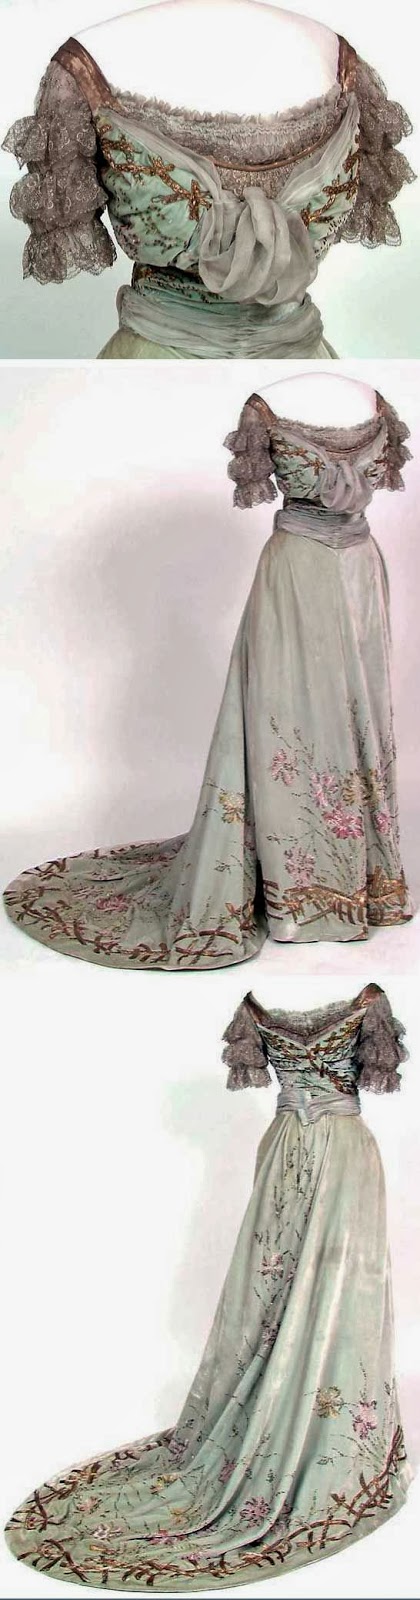 i love historical clothing: Edwardian dresses